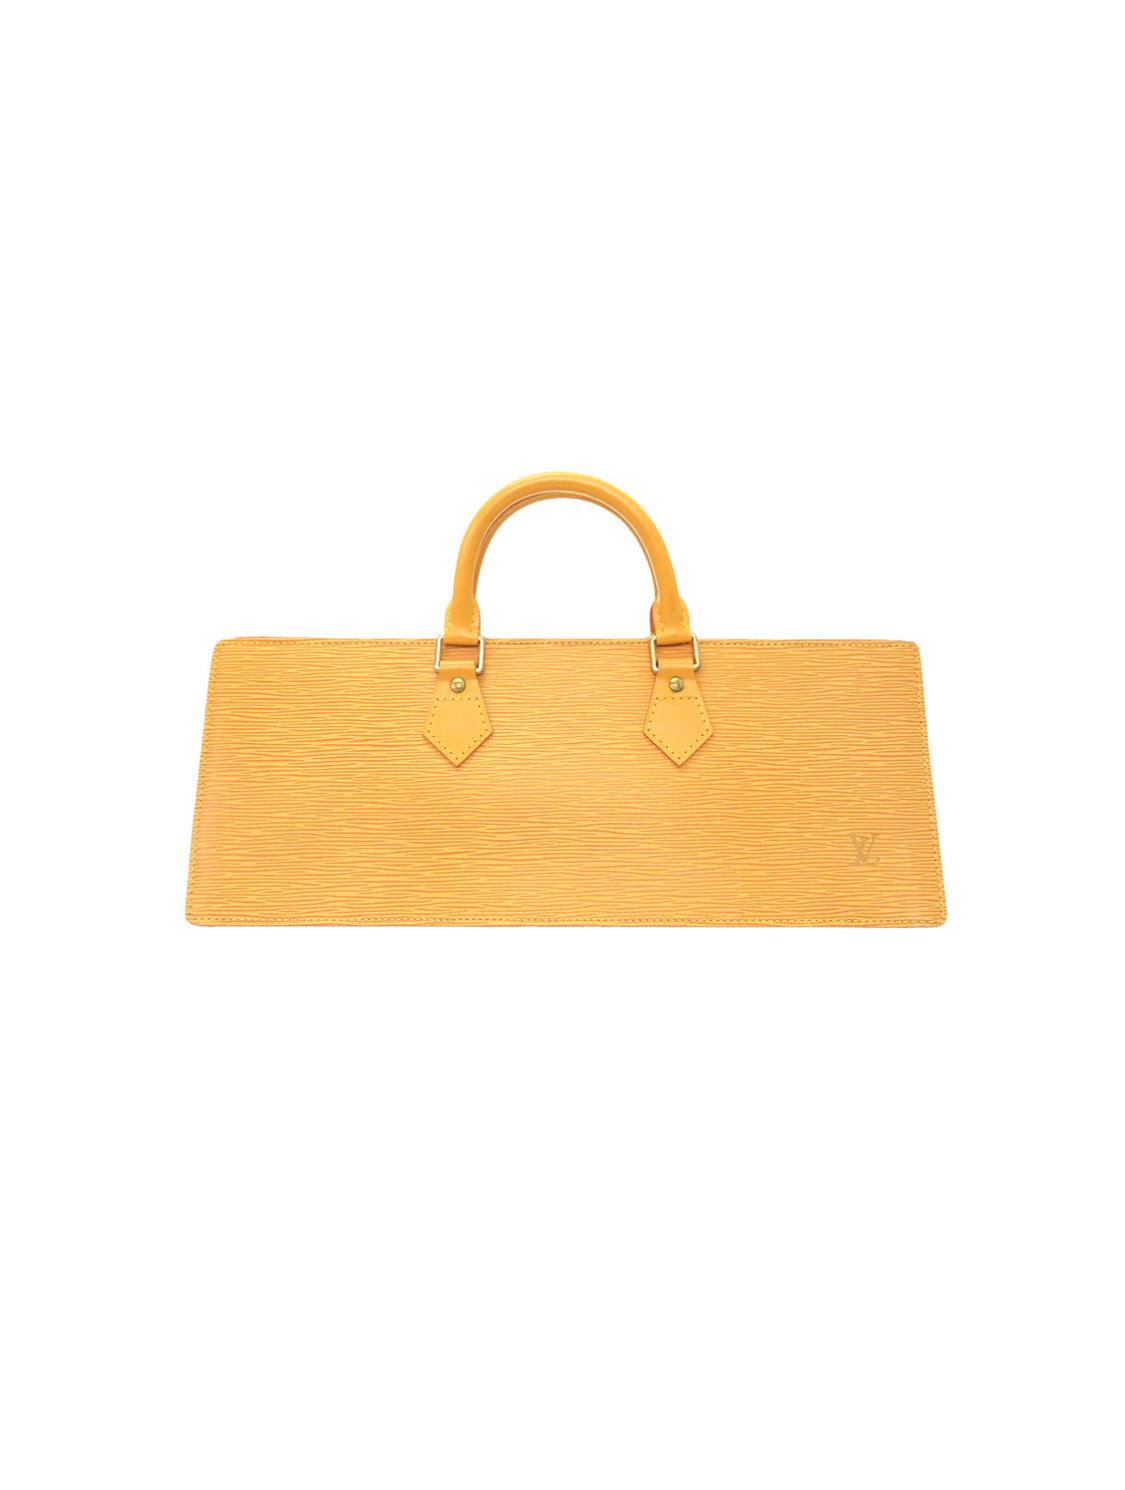 Louis Vuitton Tassil Yellow Epi Leather Sac Triangle Bag Louis Vuitton